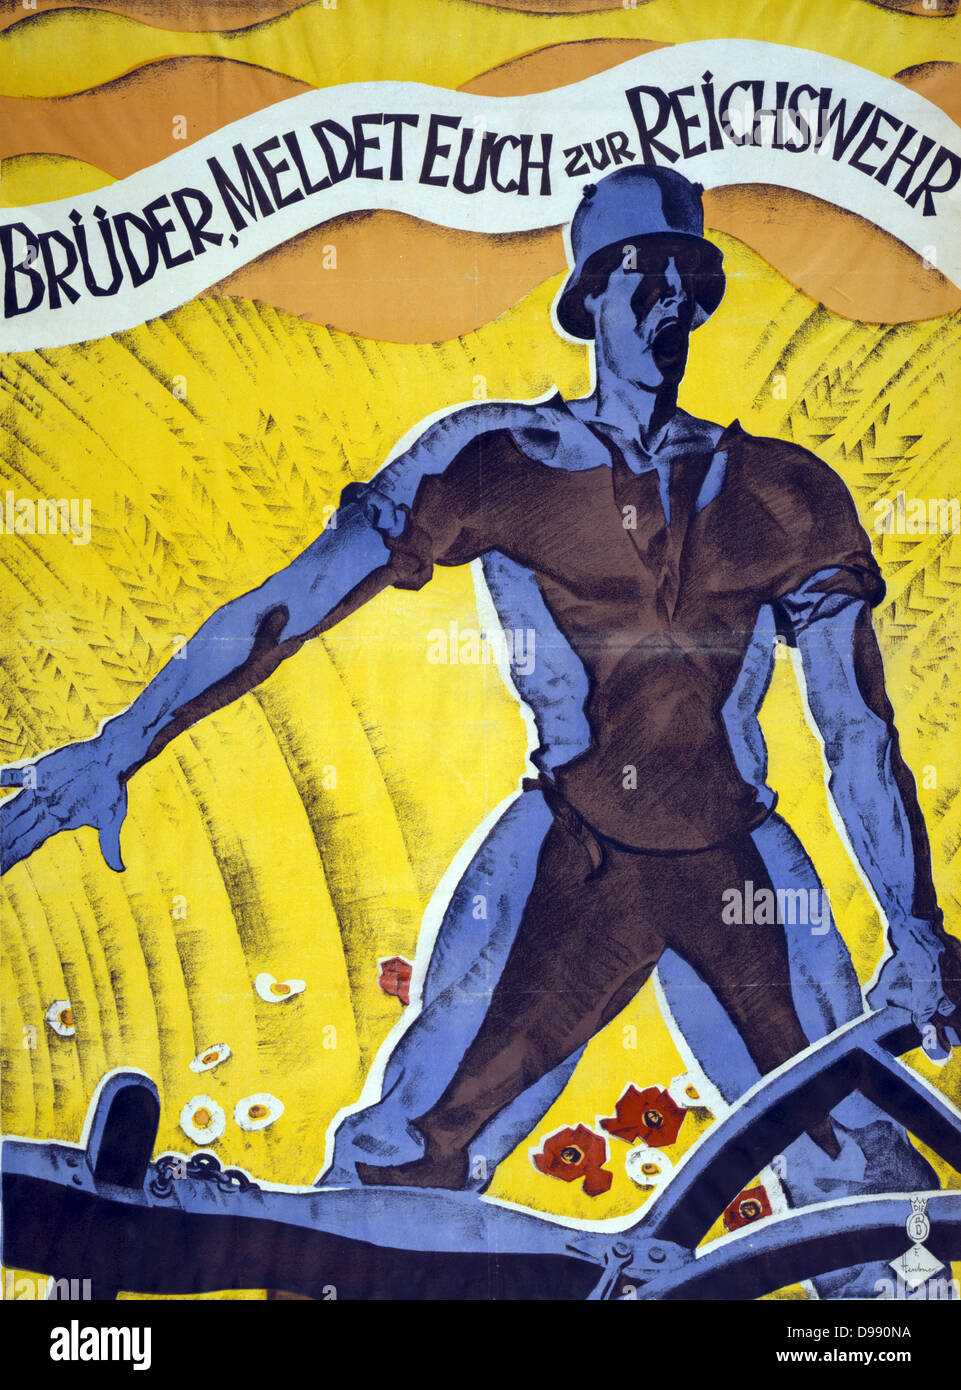 Fratelli, arruolare nella Reichswehr'. Poster di tedesco 1920. Uomo in un soldato casco tenendo un aratro. Dietro di lui è un campo di grano e fiori. Reichswehr (Difesa nazionale) esisteva da 1919-1935 quando divenne la Wehrmacht. Foto Stock